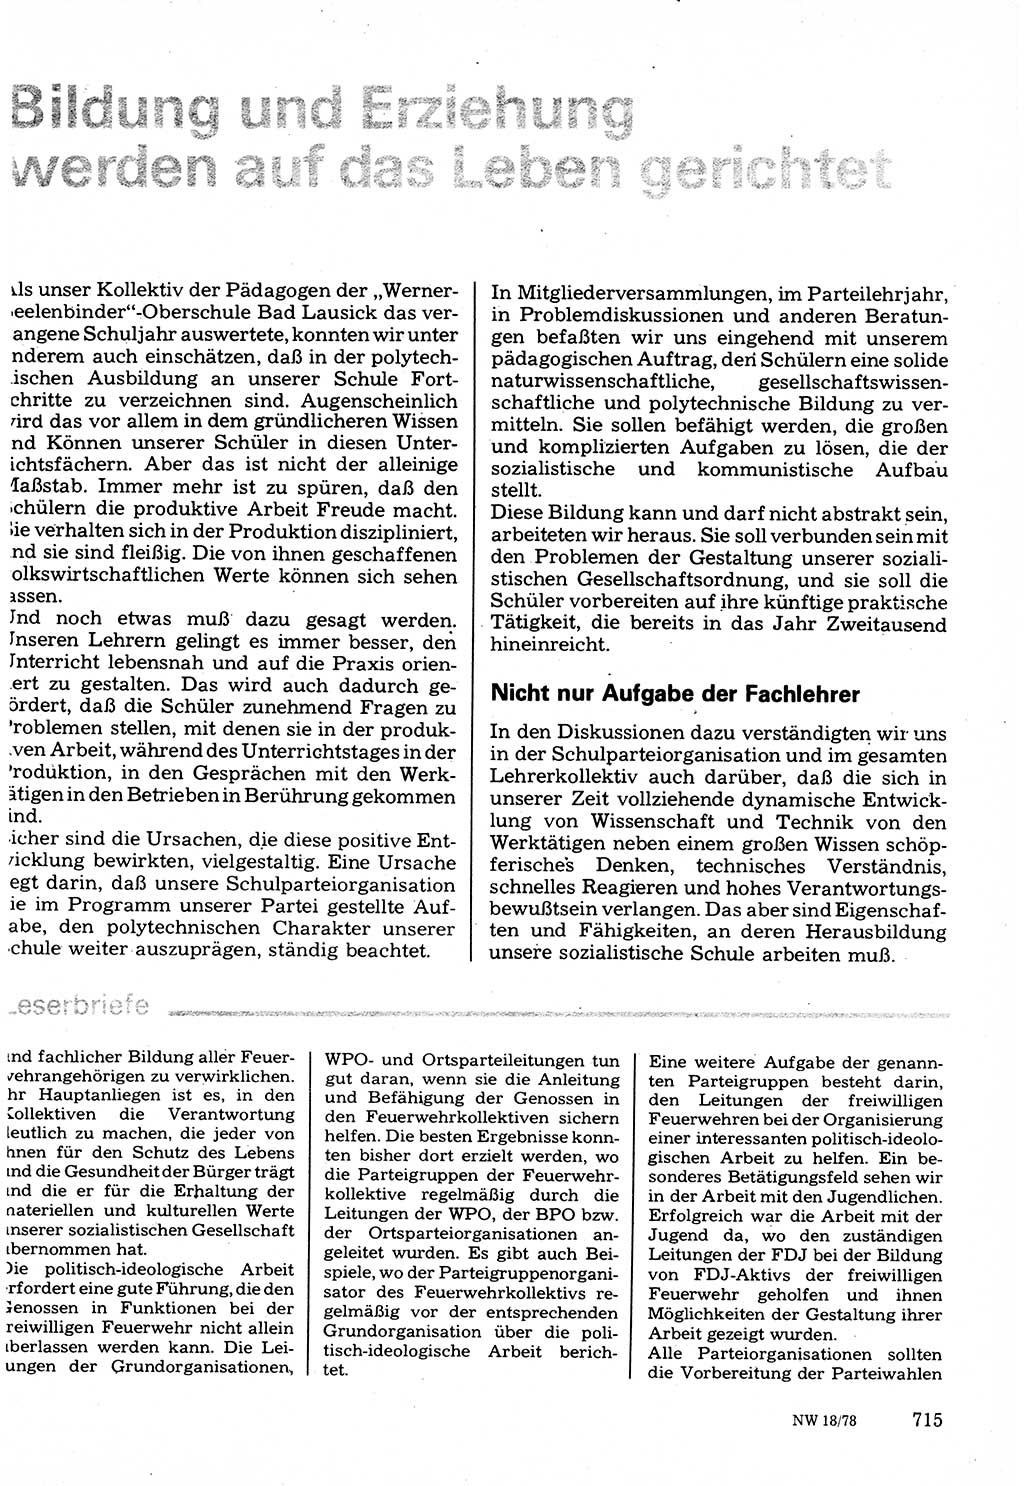 Neuer Weg (NW), Organ des Zentralkomitees (ZK) der SED (Sozialistische Einheitspartei Deutschlands) für Fragen des Parteilebens, 33. Jahrgang [Deutsche Demokratische Republik (DDR)] 1978, Seite 715 (NW ZK SED DDR 1978, S. 715)